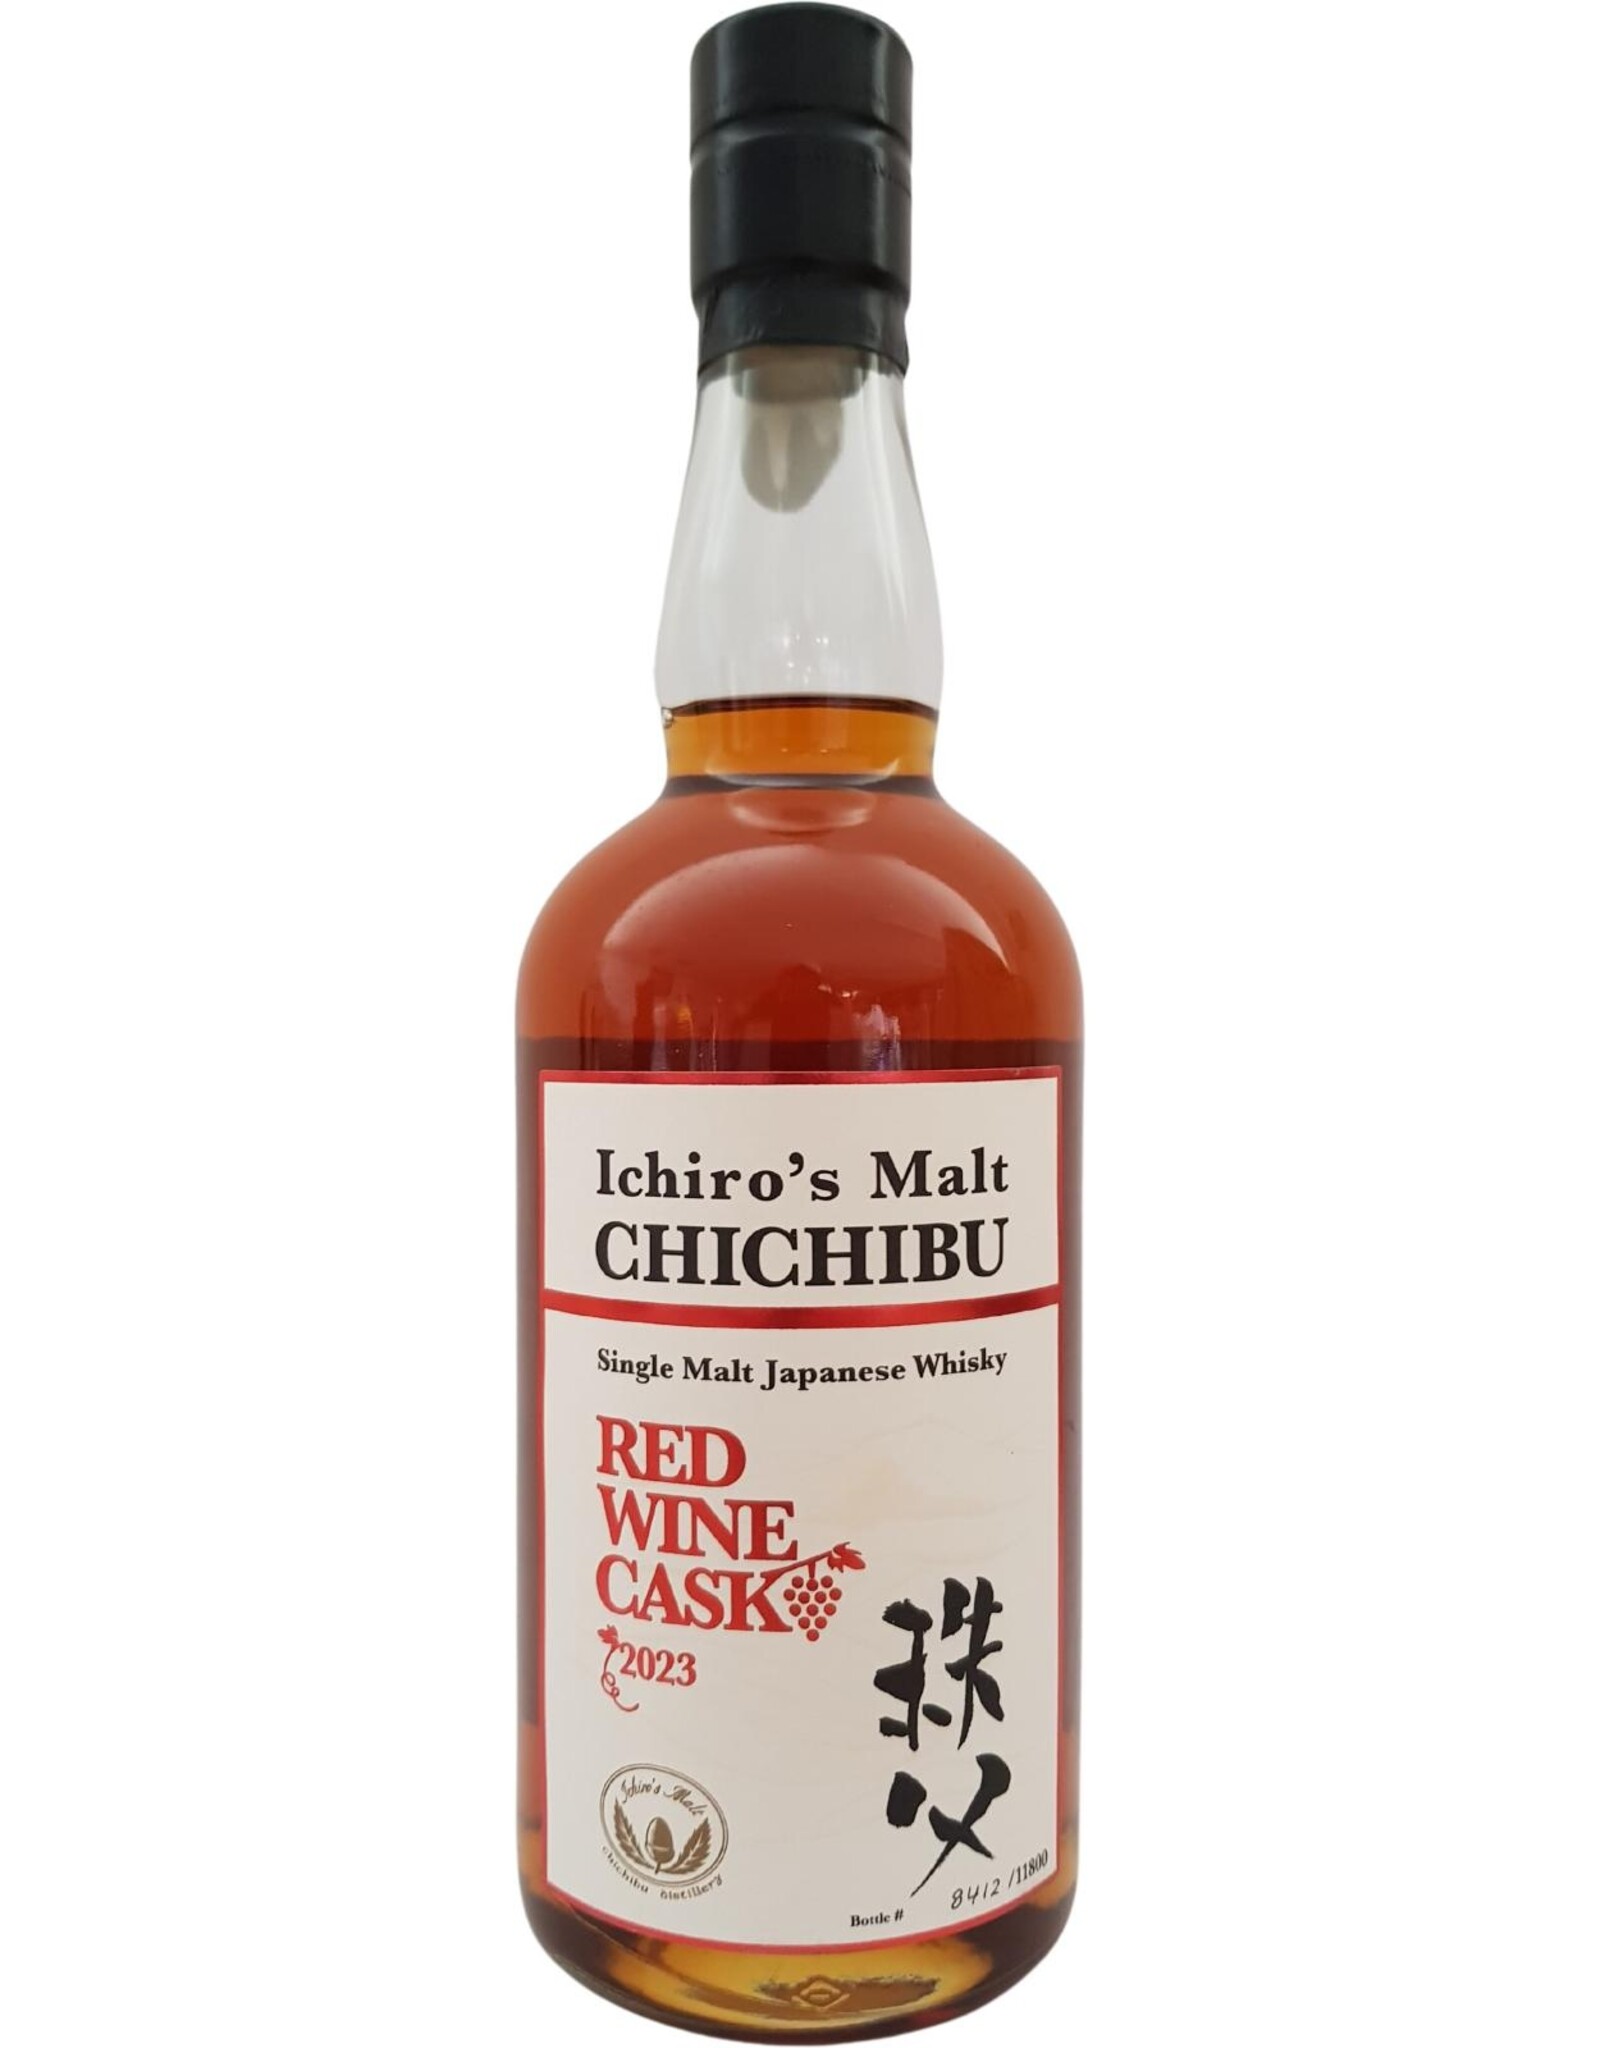 Chichibu Chichibu Ichiro's Malt Red Wine Cask 50,5%